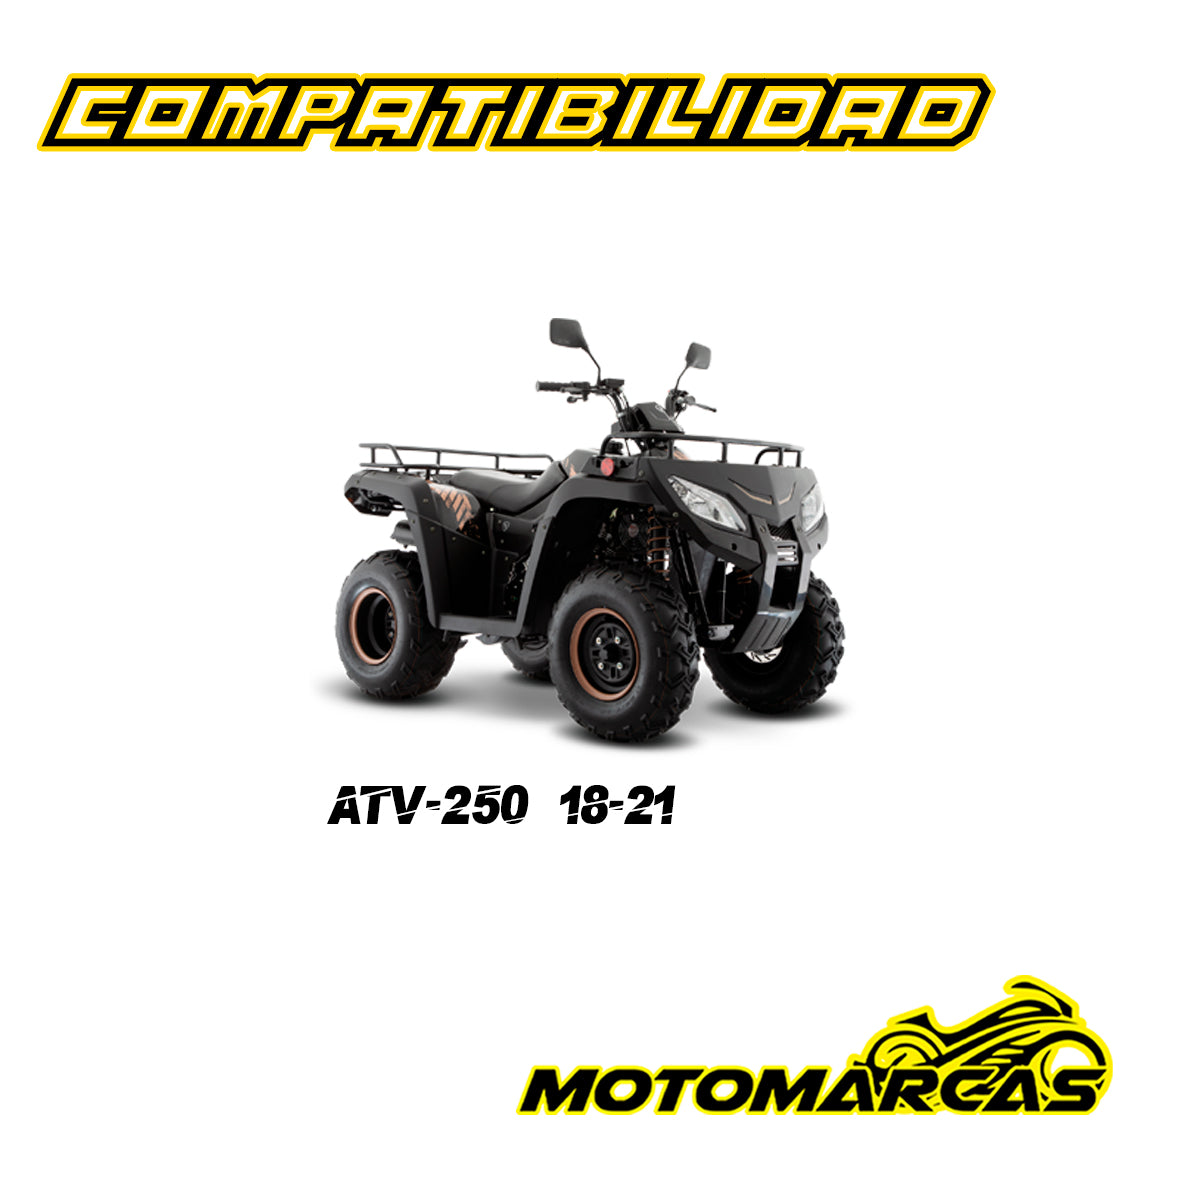 RIN TRASERO PARA MOTOCICLETA COMPATIBILIDAD ATV 250 AÑOS 18-21